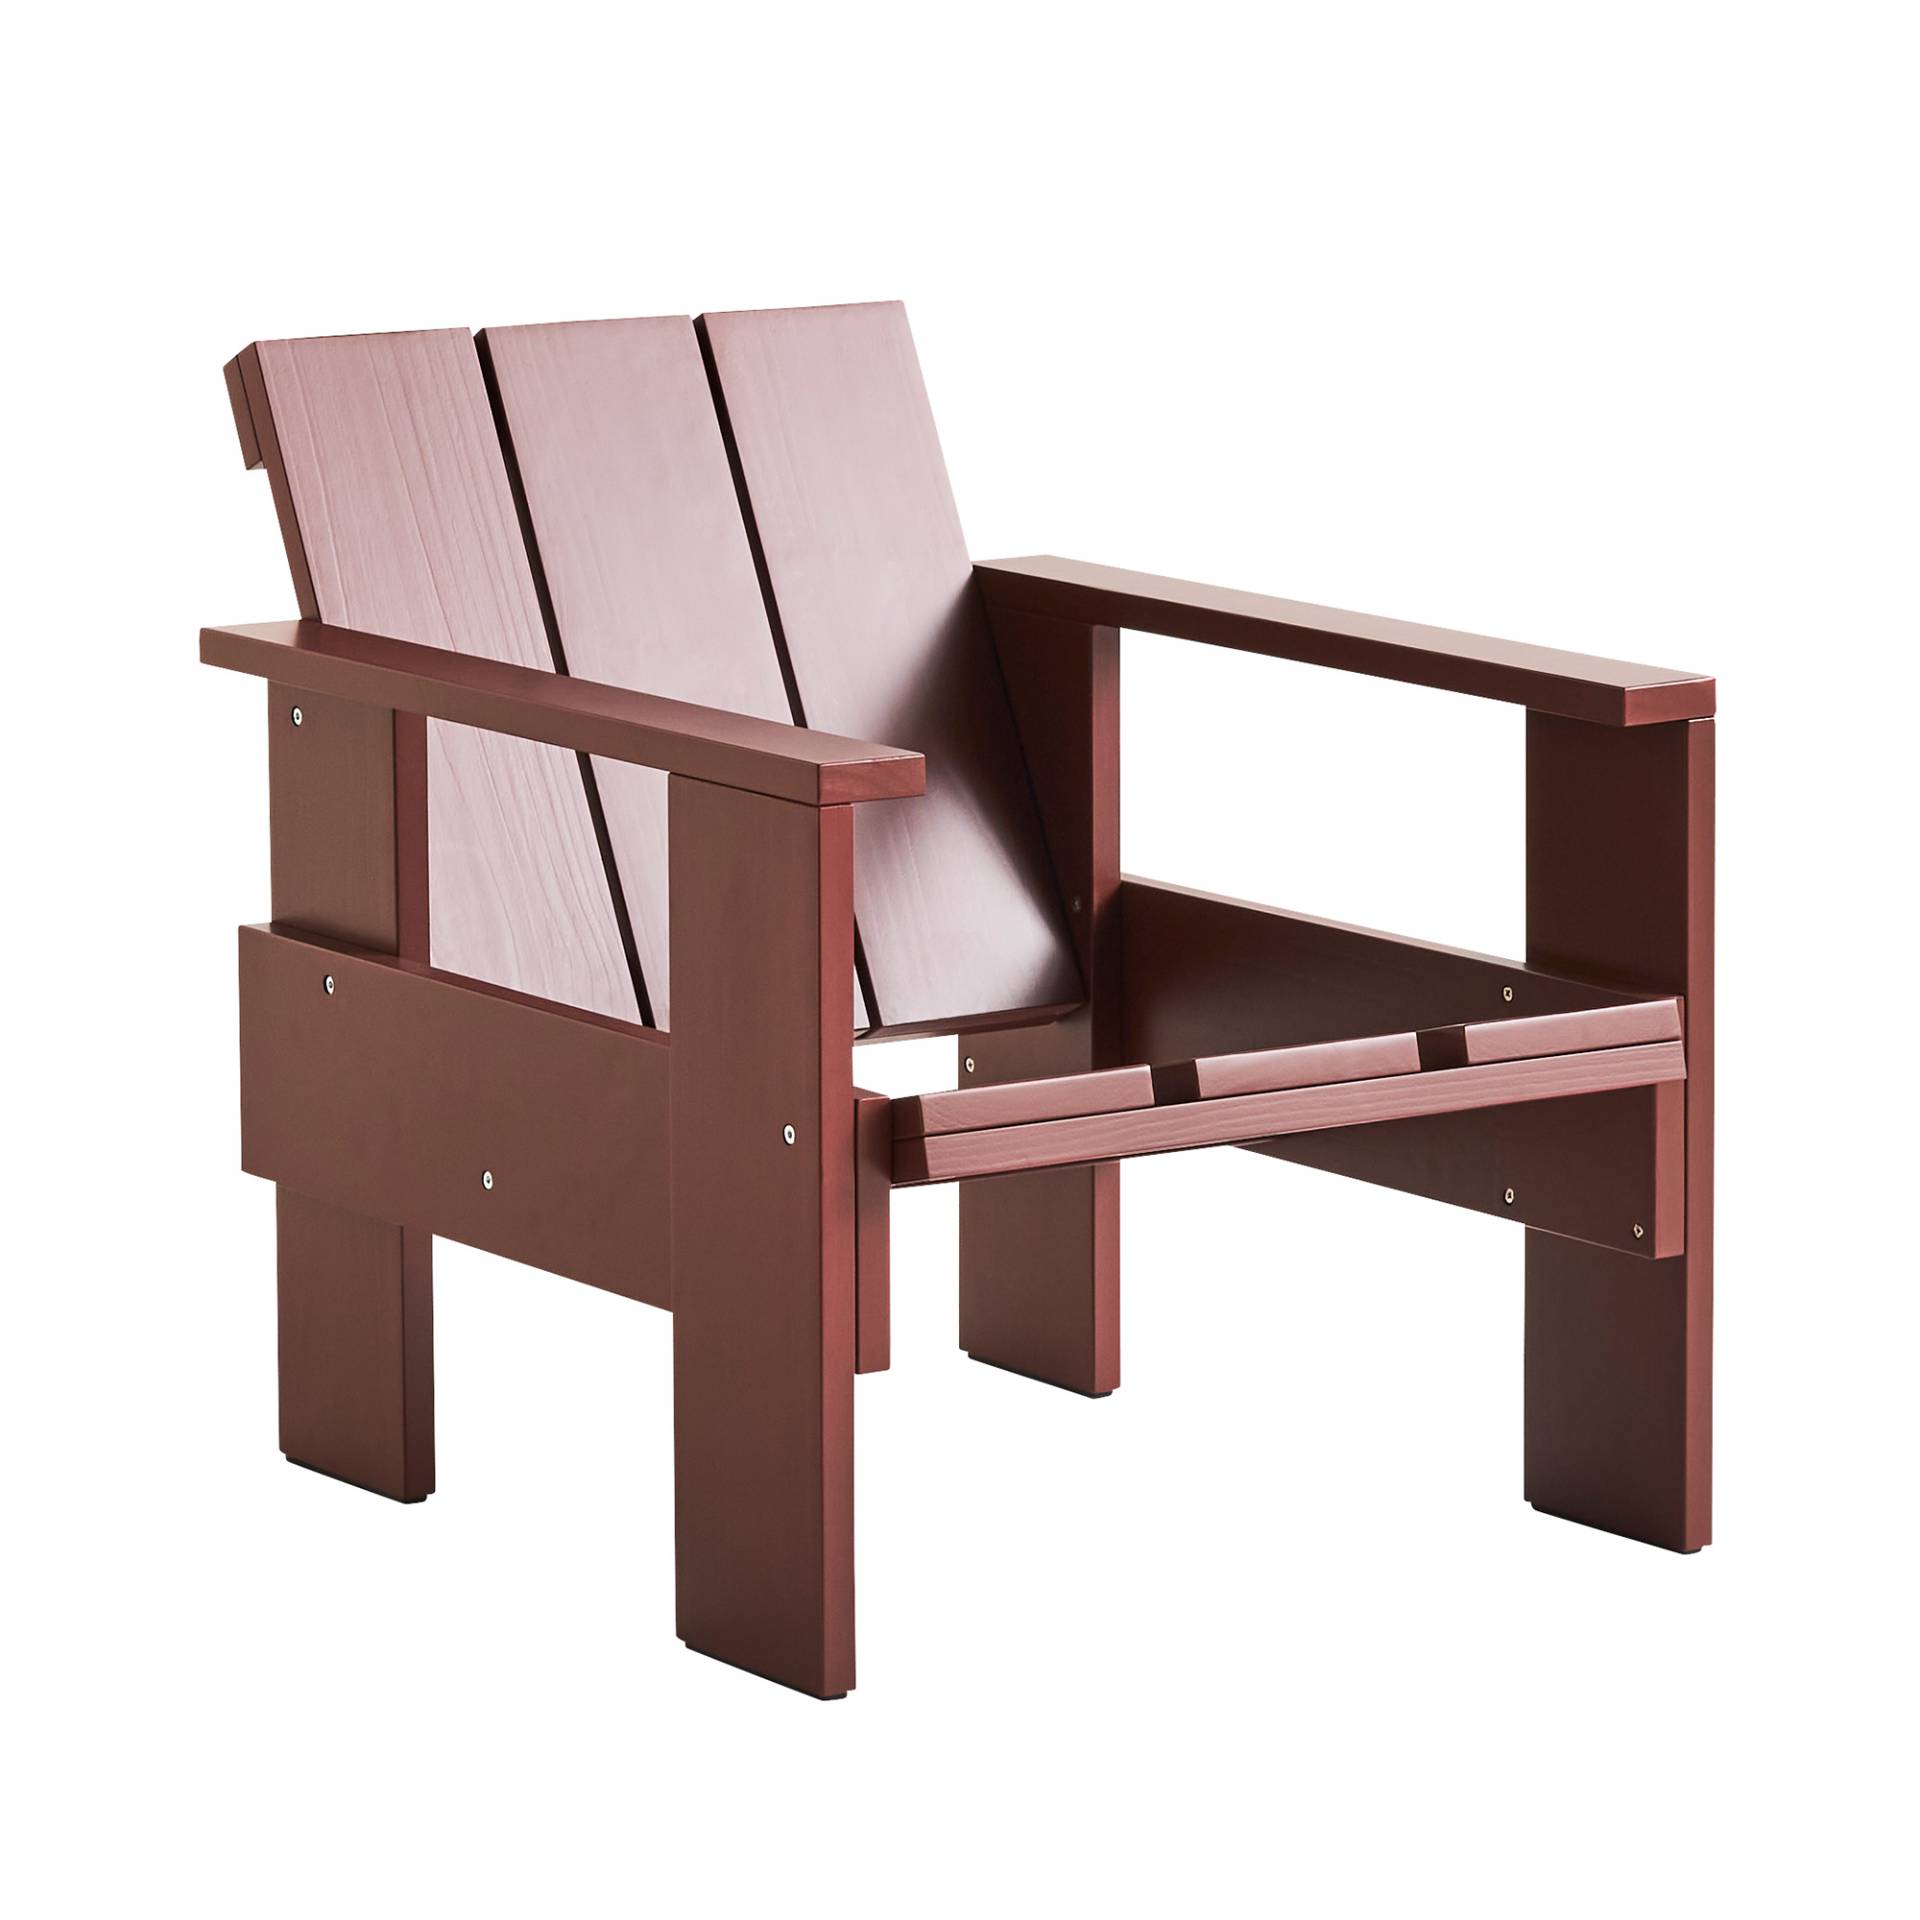 HAY - Crate Garten Lounge Stuhl 77cm - eisenrot/lackiert wasserbasiert/LxBxH 77x58x64,5cm von HAY